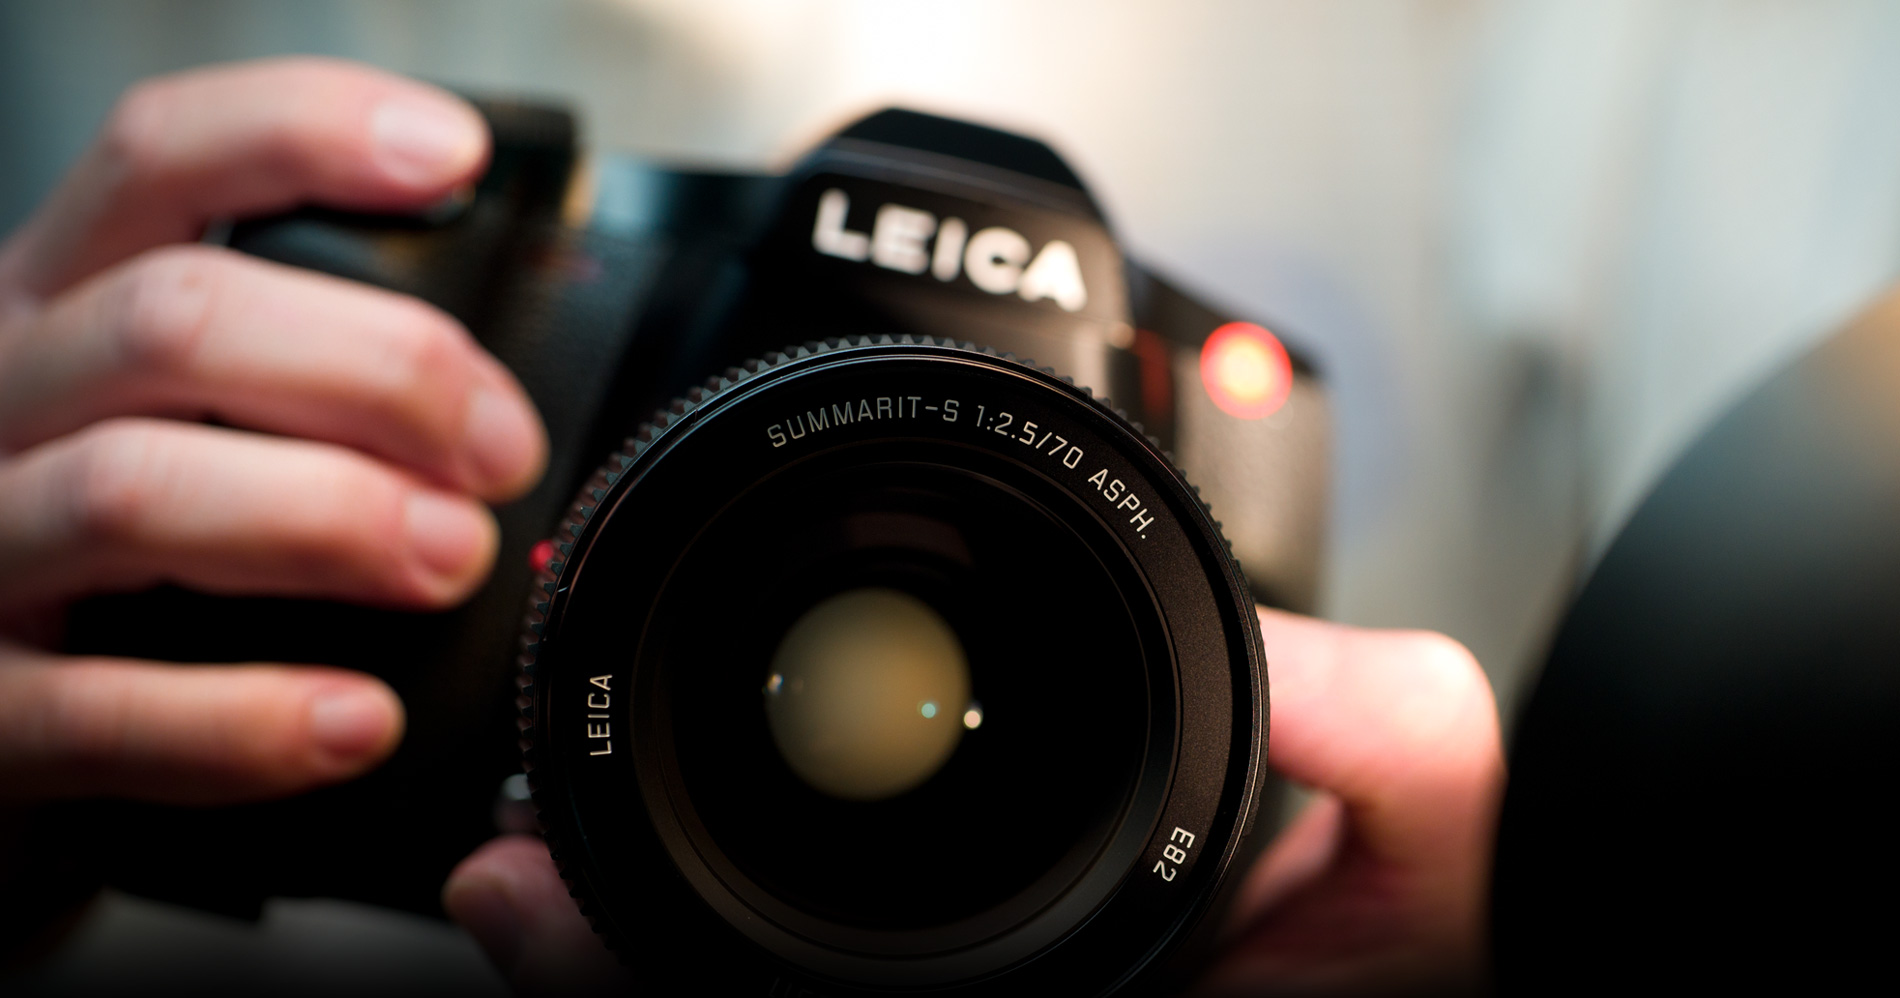 Liệu đây có phải là chiếc Medium mới của Leica sẽ ra mắt trong dịp Photokina vào tháng 9 tới đây?